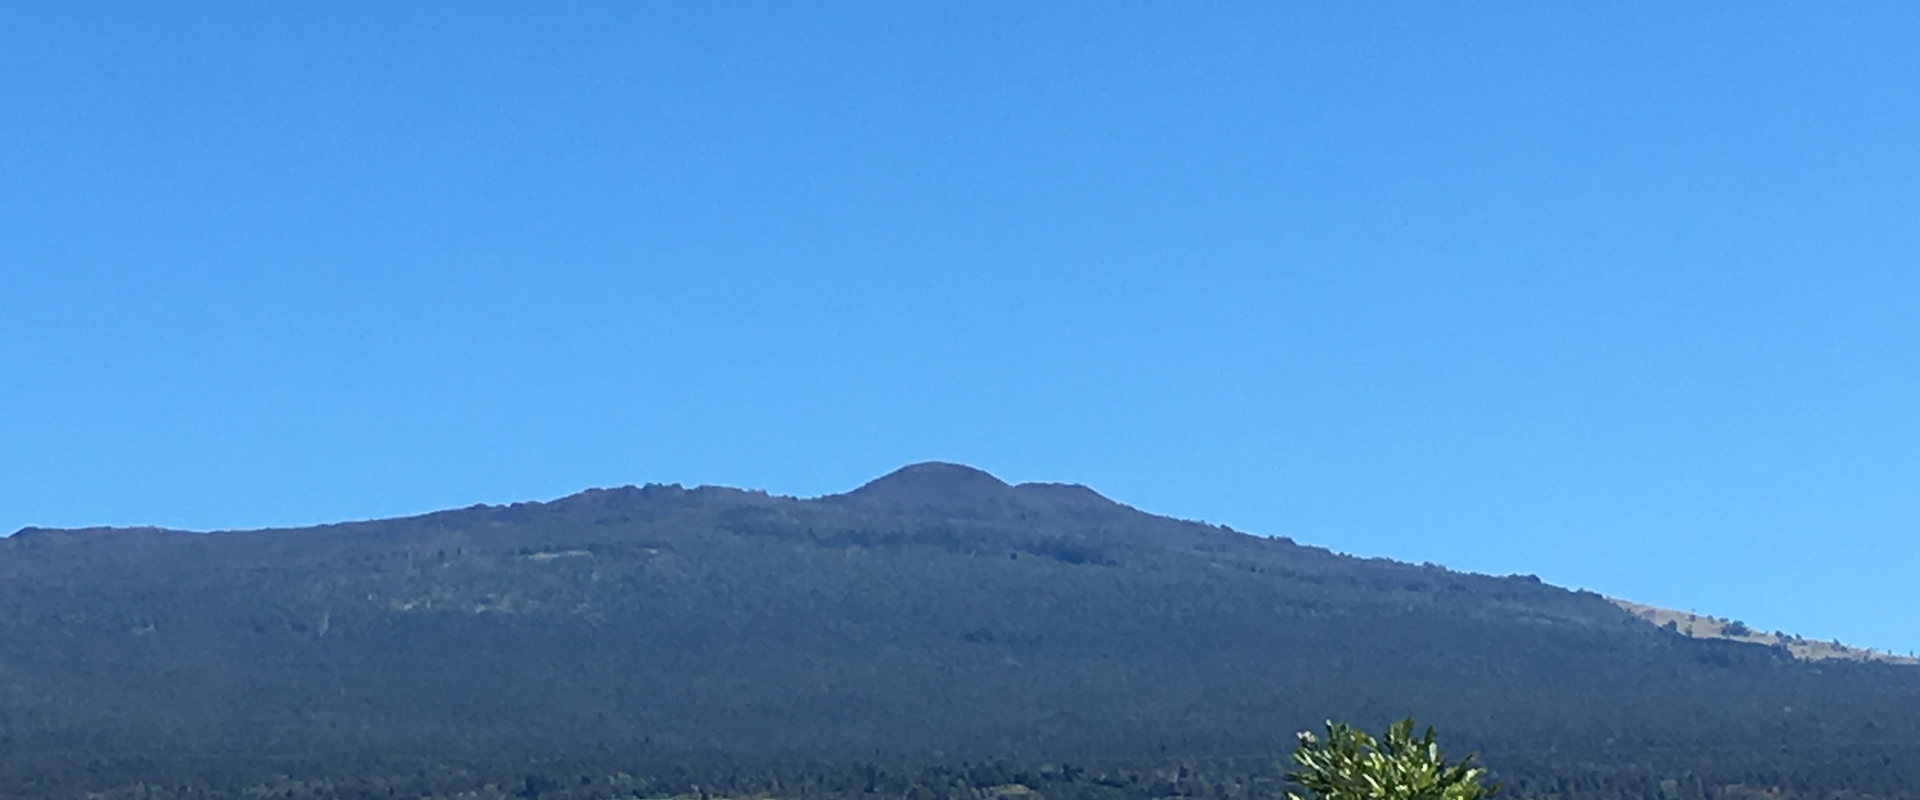 mountain against a blue sky